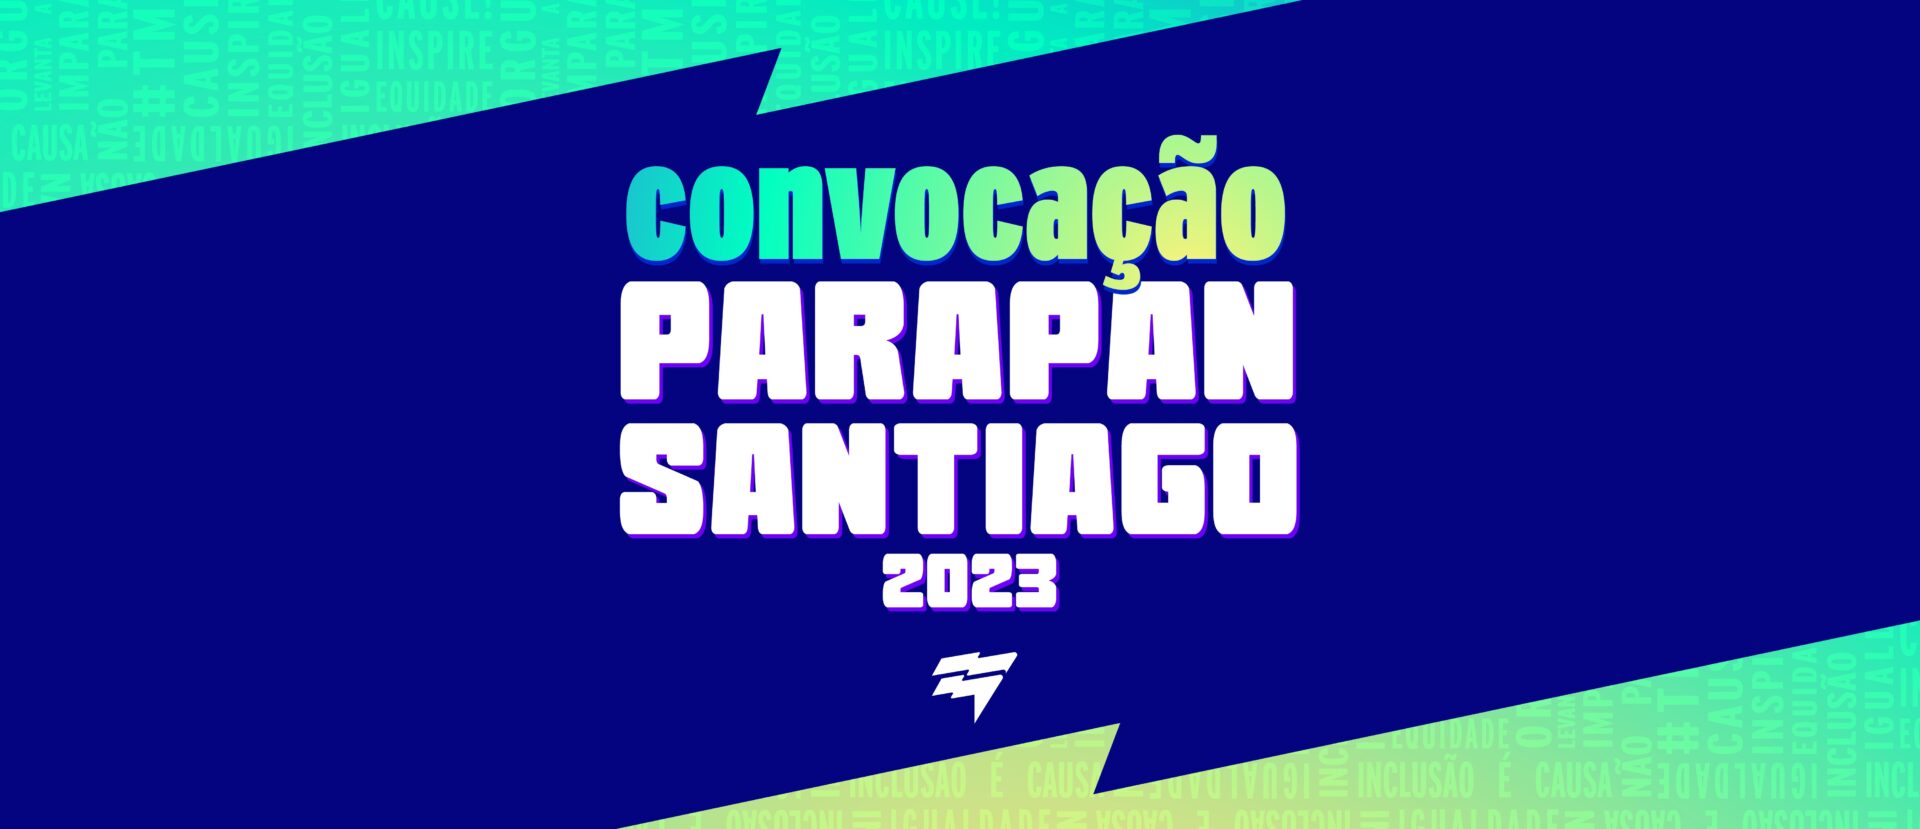 Parapan de Santiago 2023: CPB convoca a los primeros deportistas de 10 deportes